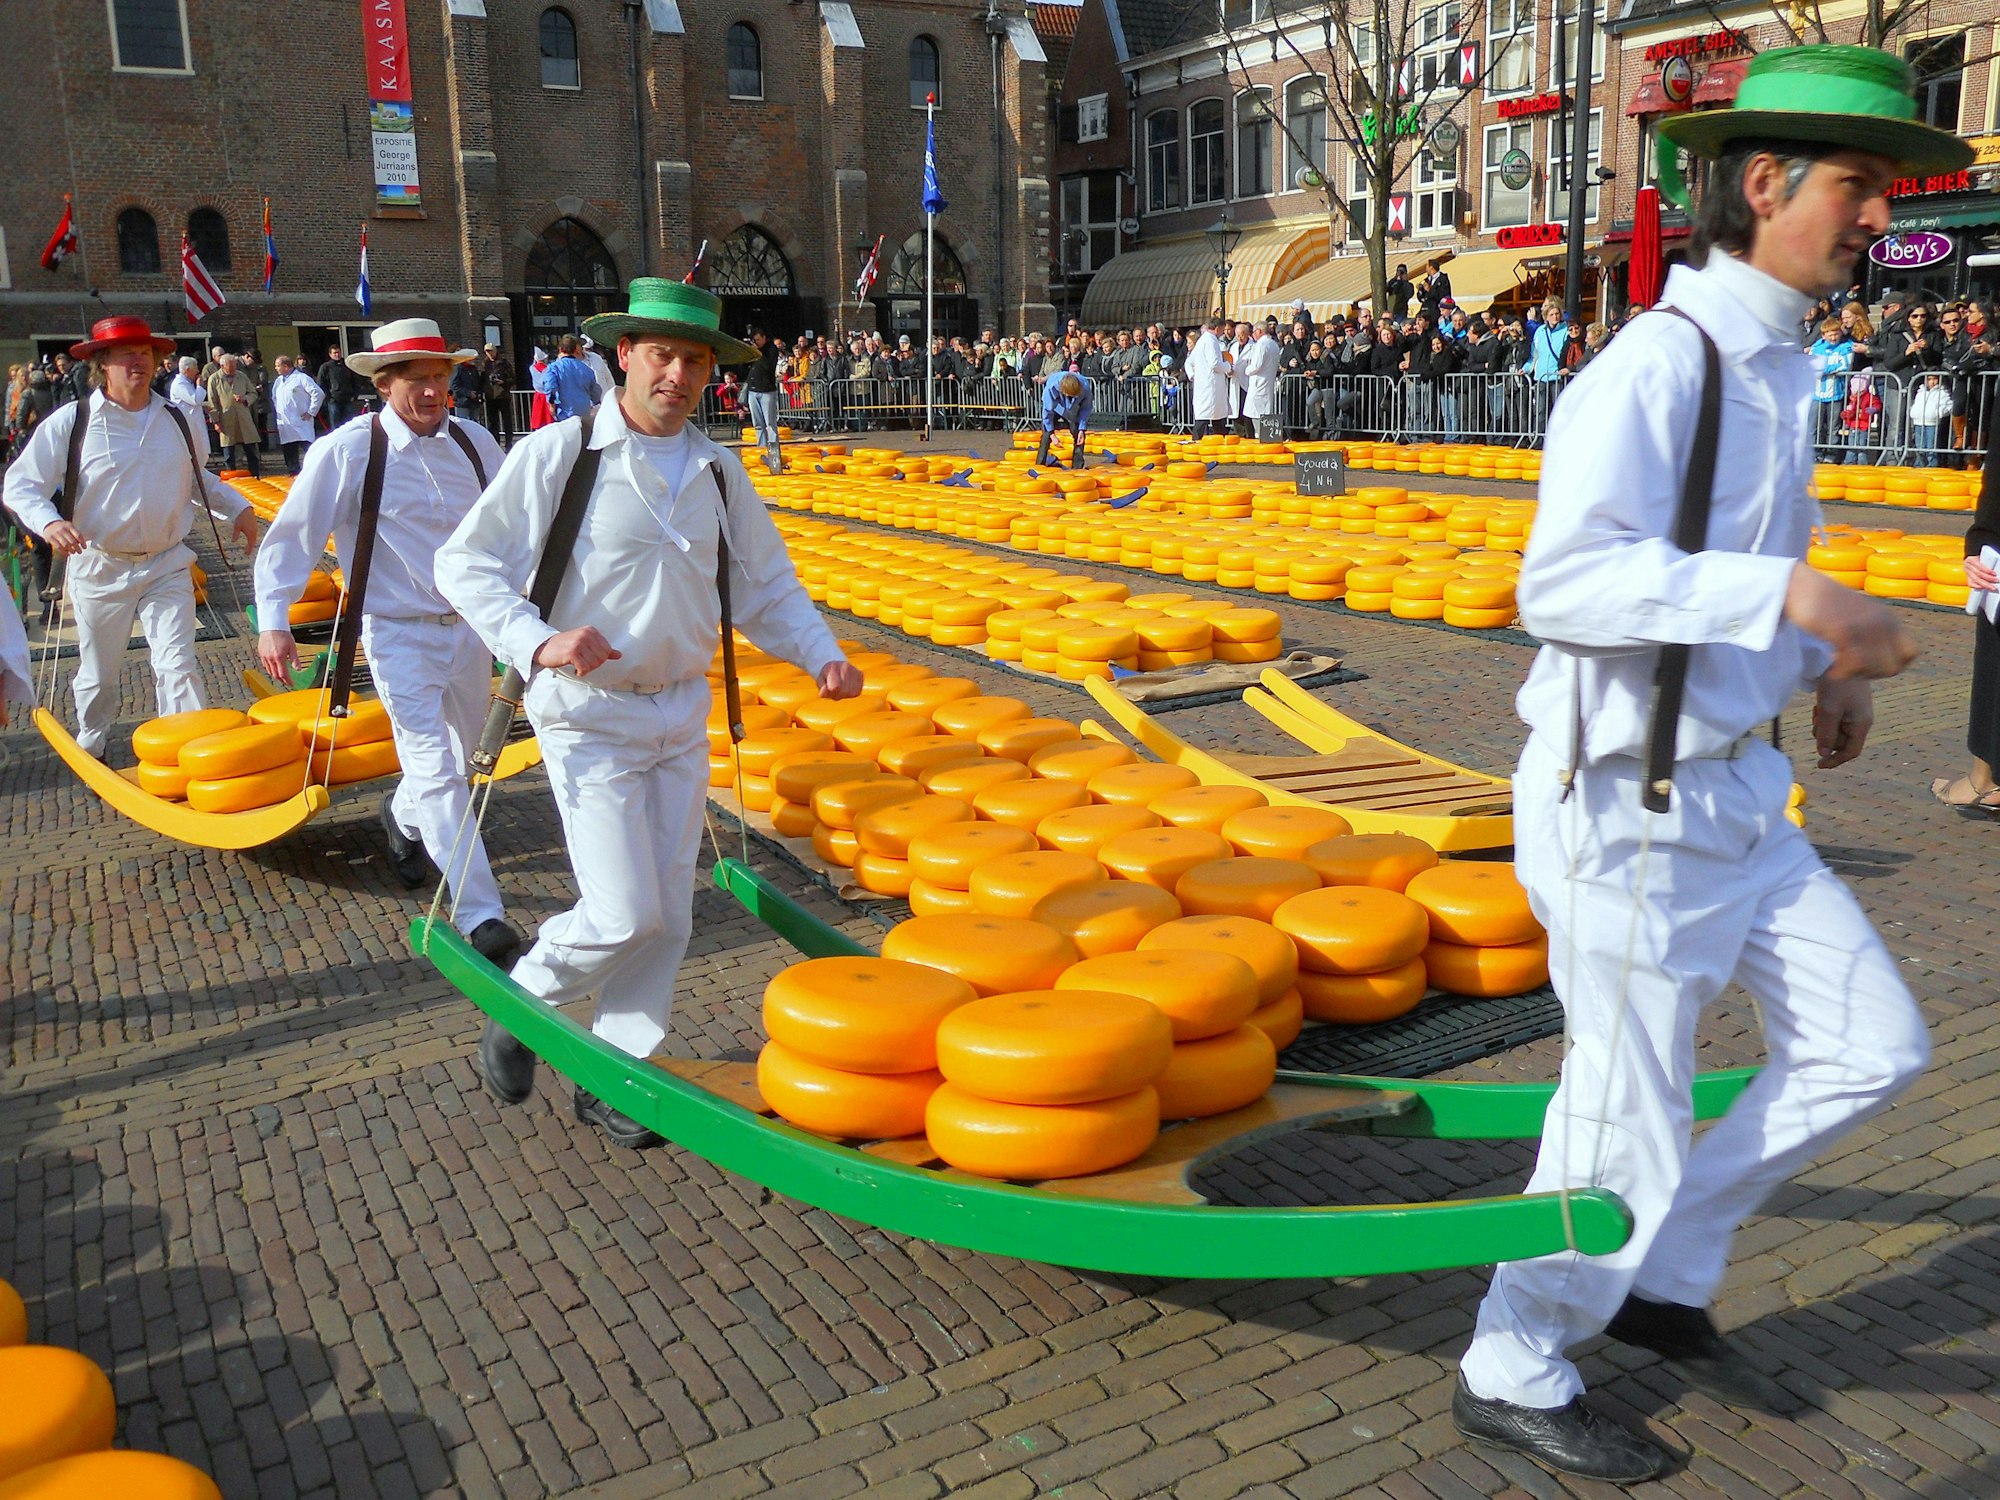 Käseträger bringen Goudaräder in der nordholländischen Stadt Alkmaar beim traditionellen Käsemarkt zu den Händlern.